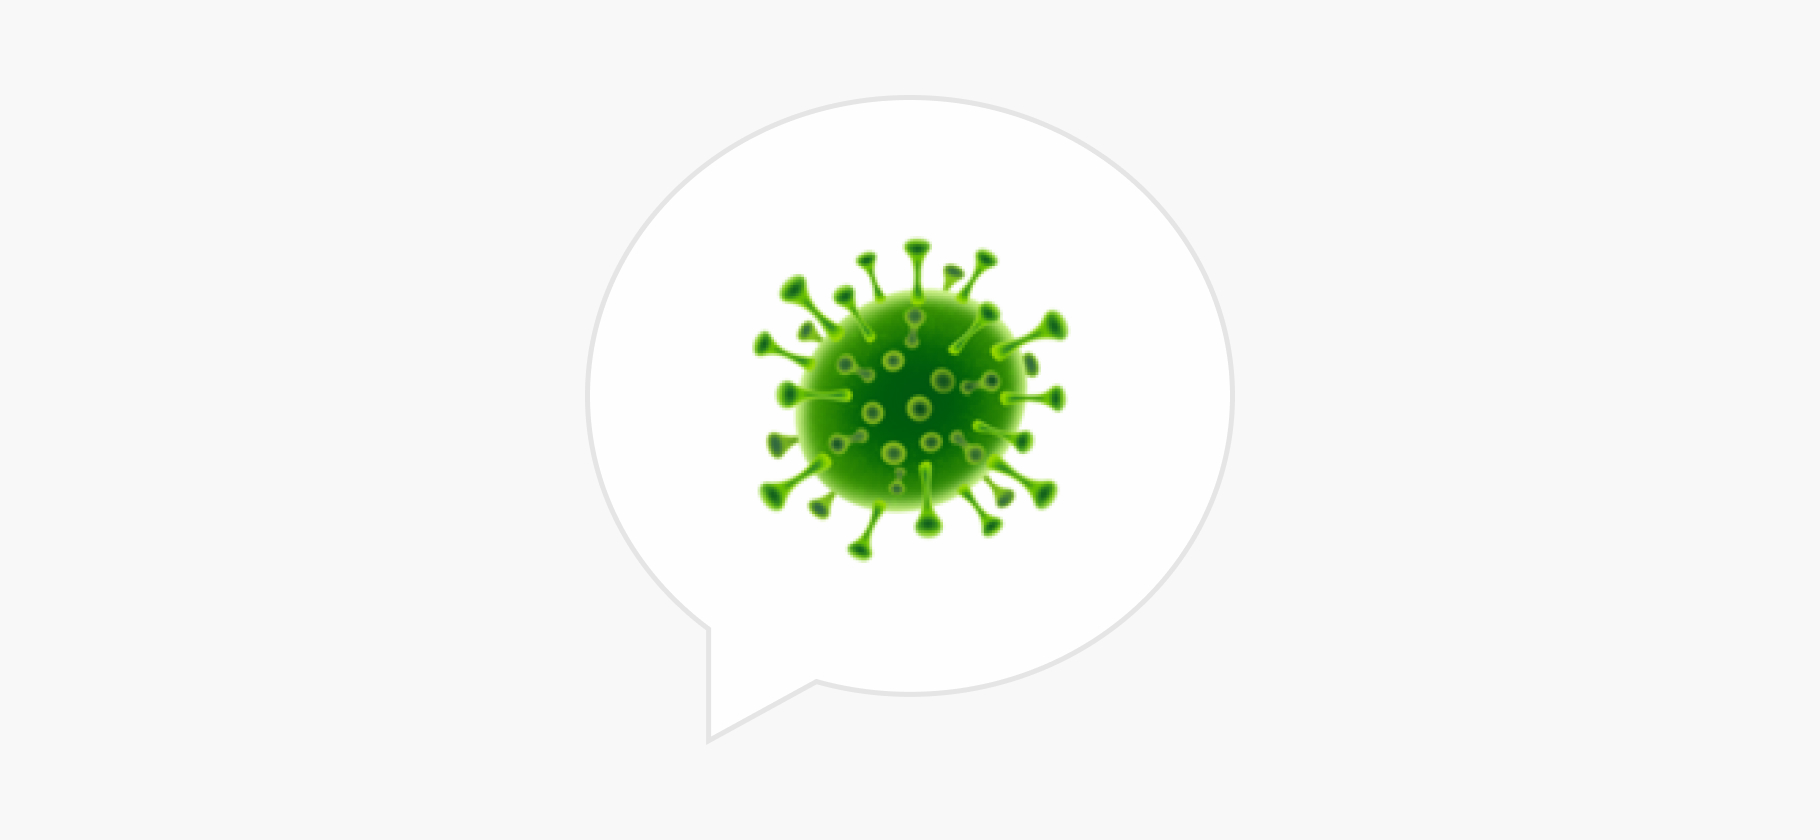 Можно ли заразиться двумя вирусными инфекциями одновременно?